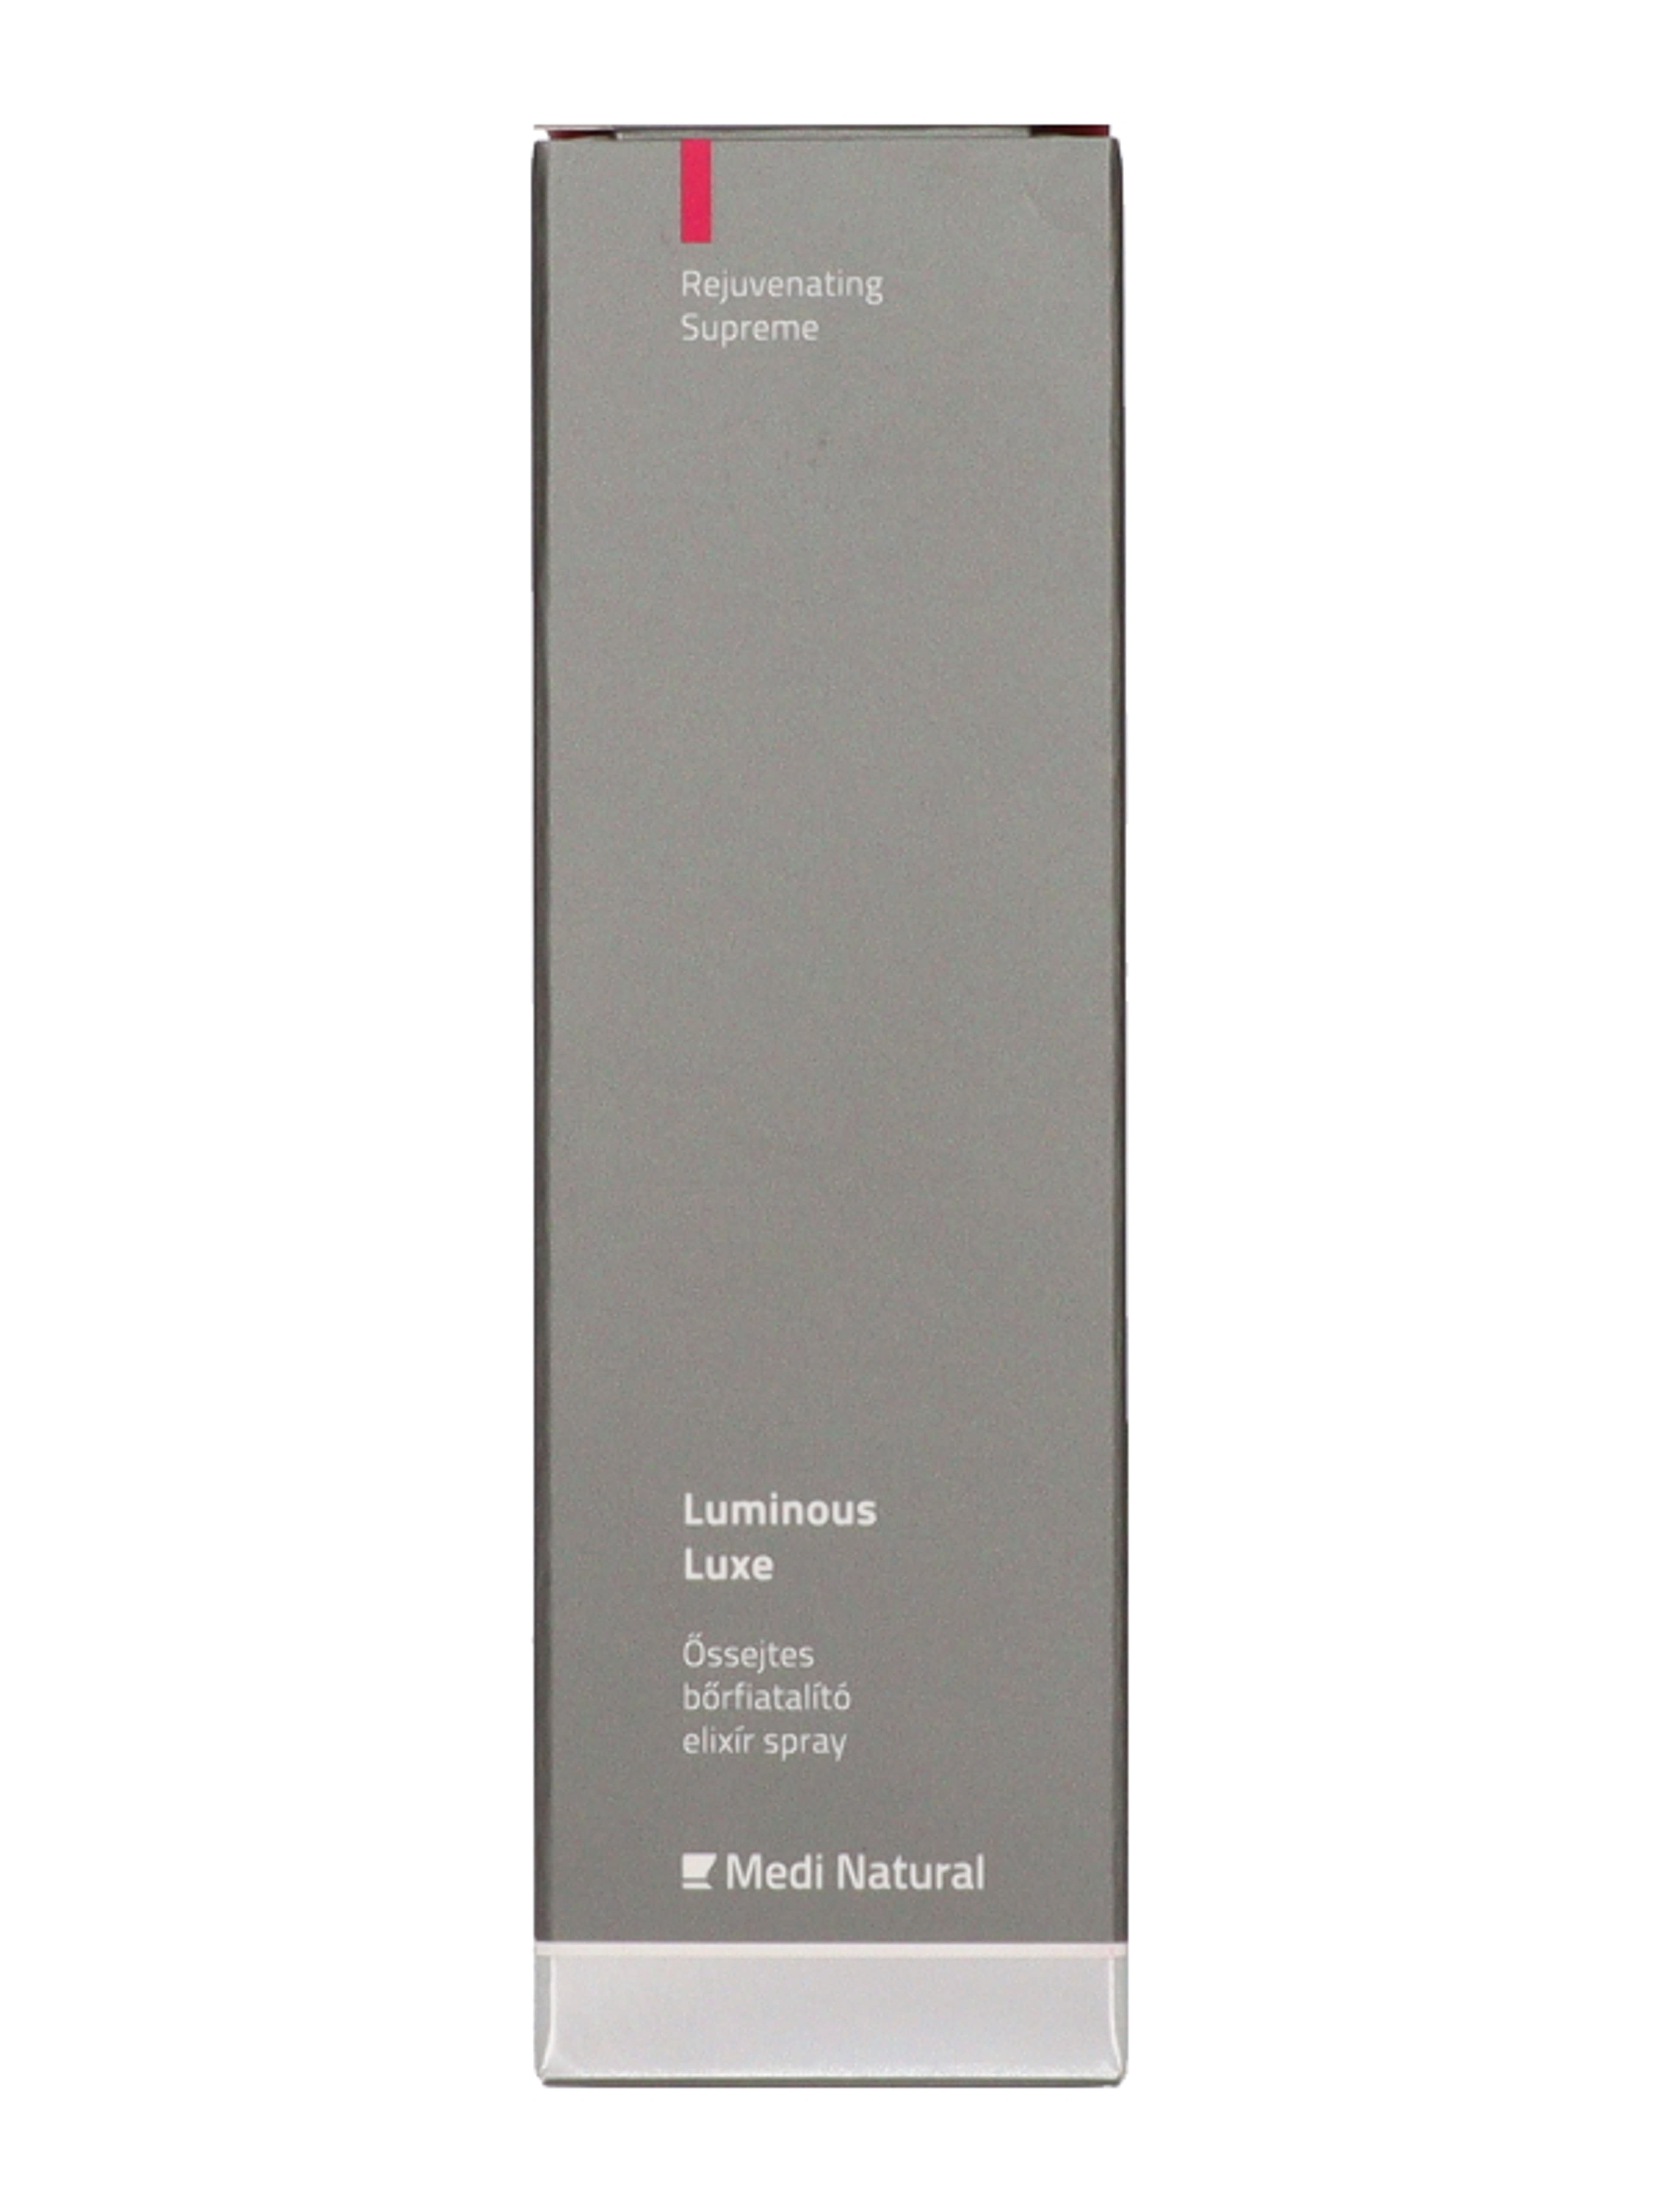 Medi Natural Luminous Luxe őssejtes bőrfiatalító elixír spray - 100 ml